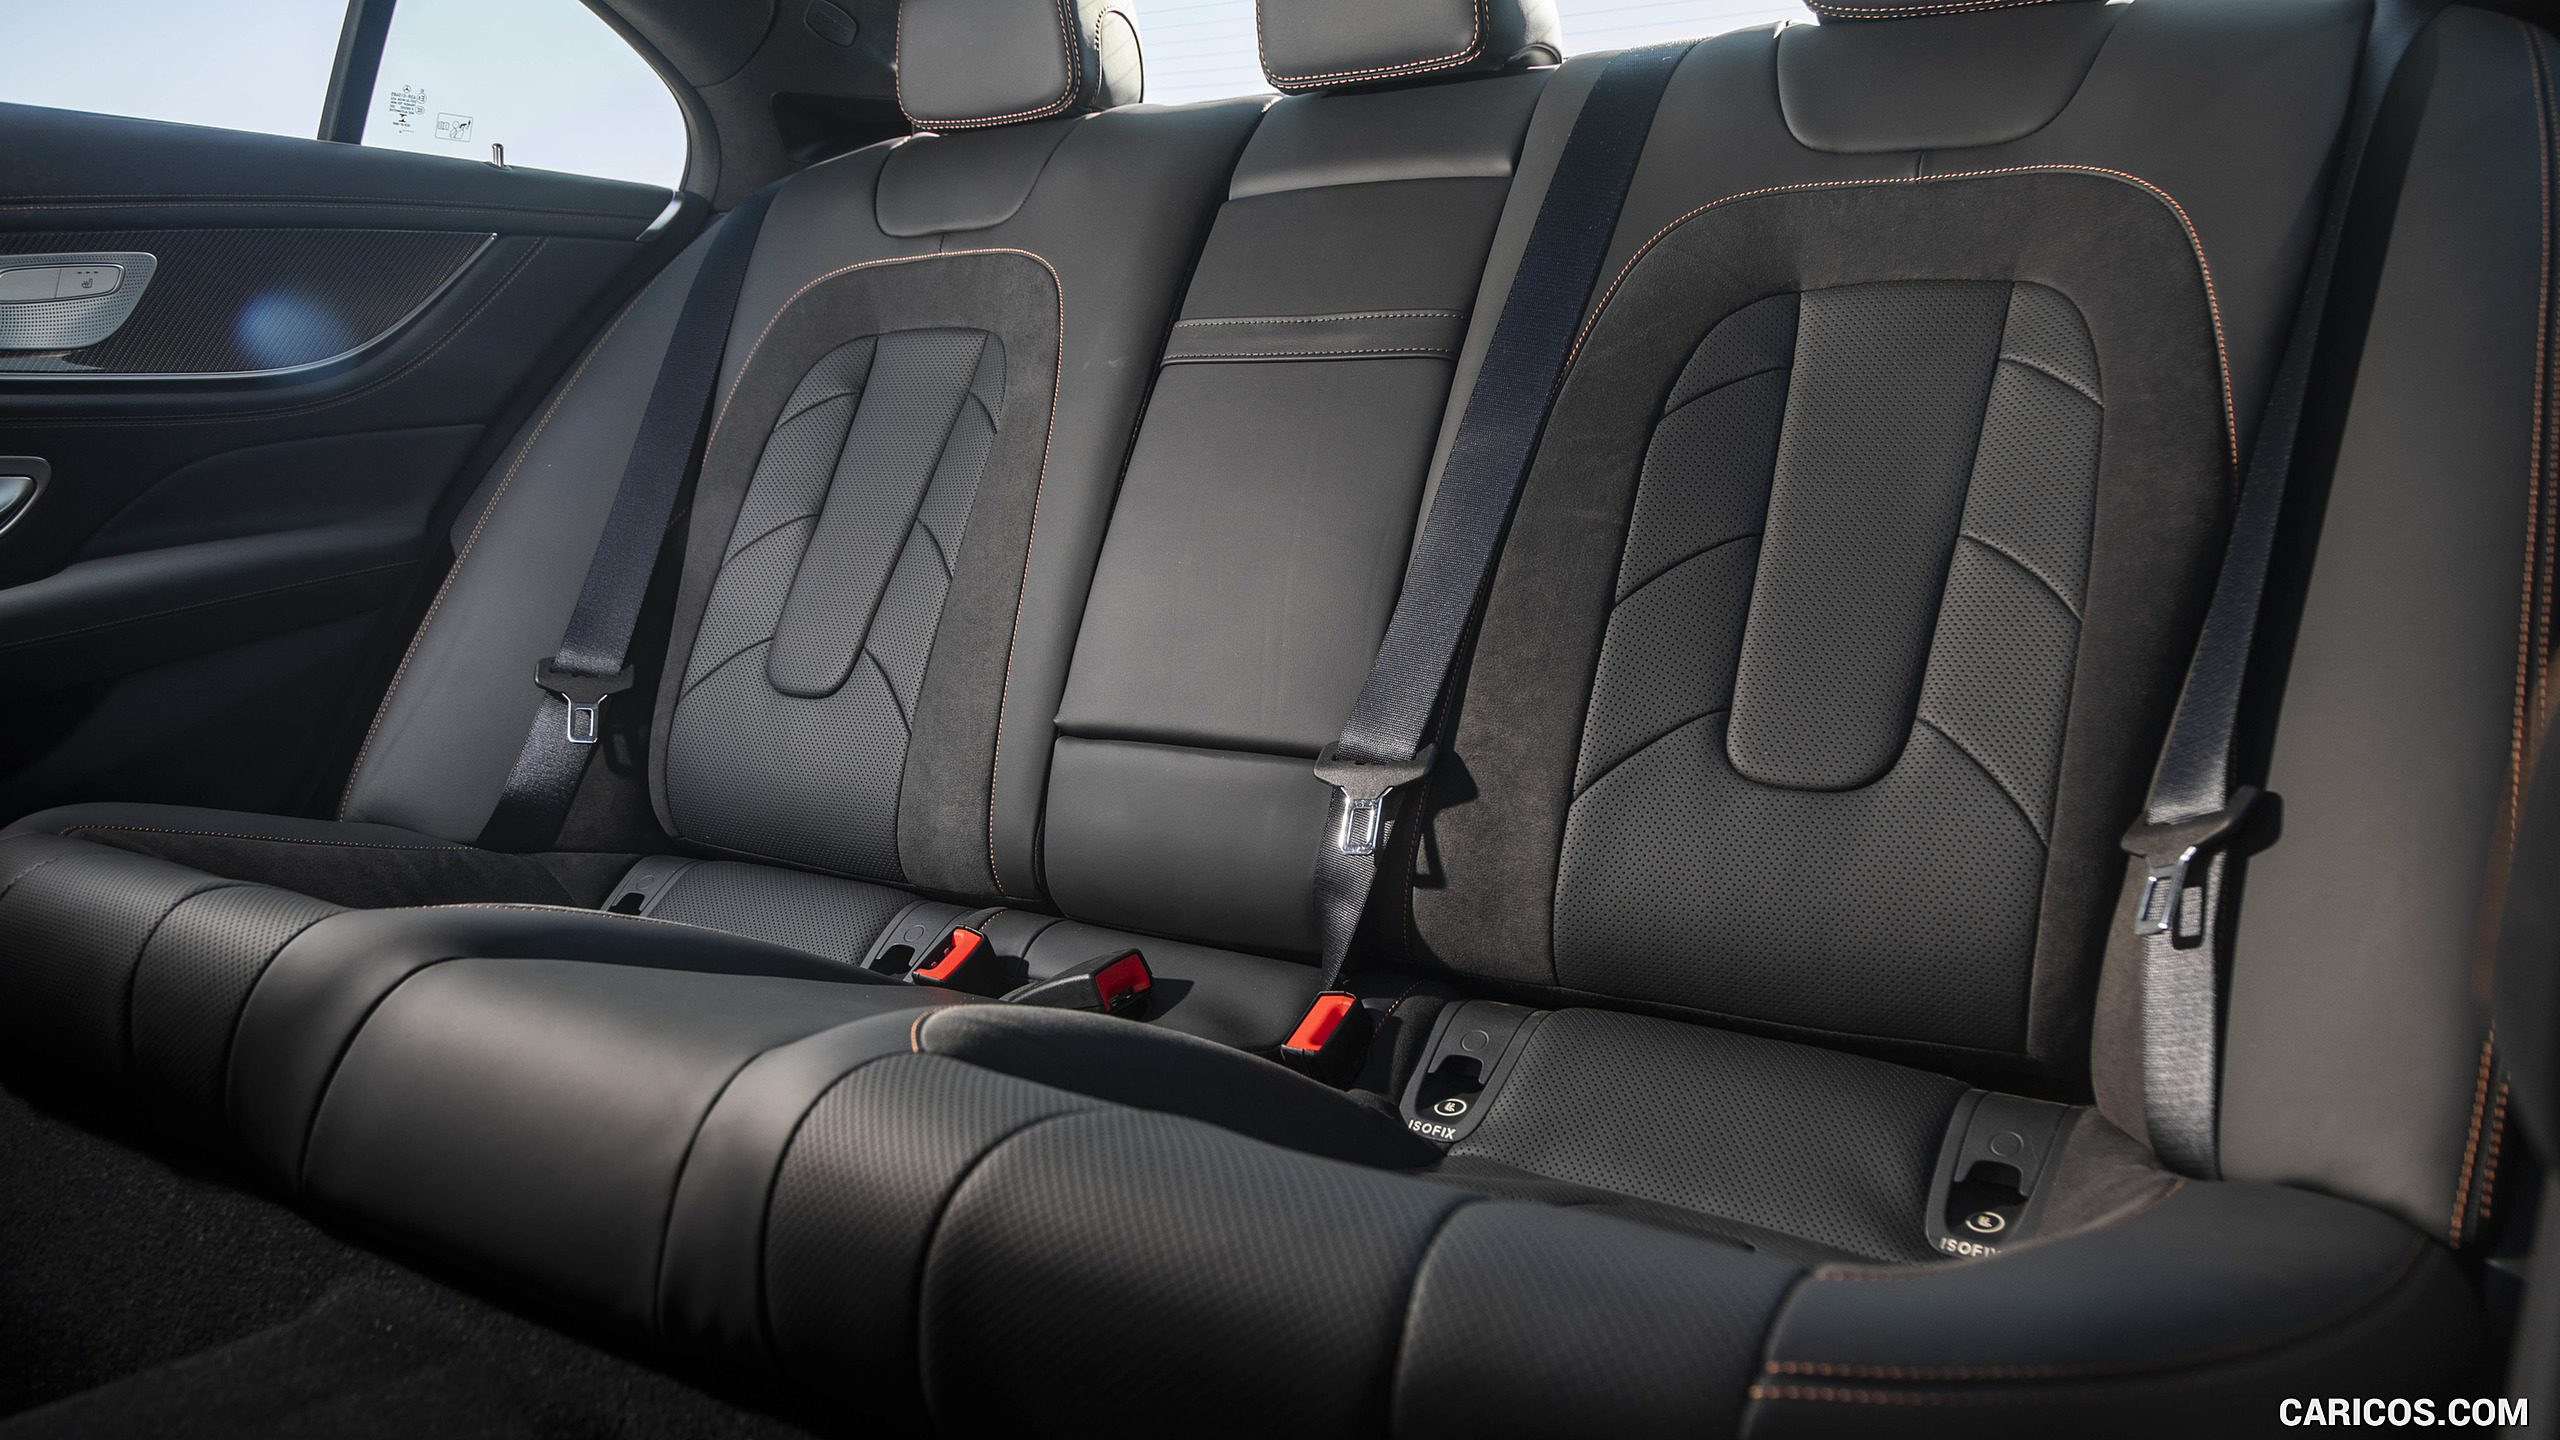 2019 Mercedes-AMG CLS 53 4MATIC+ (US-Spec) - Interior, Rear Seats, #84 of 84